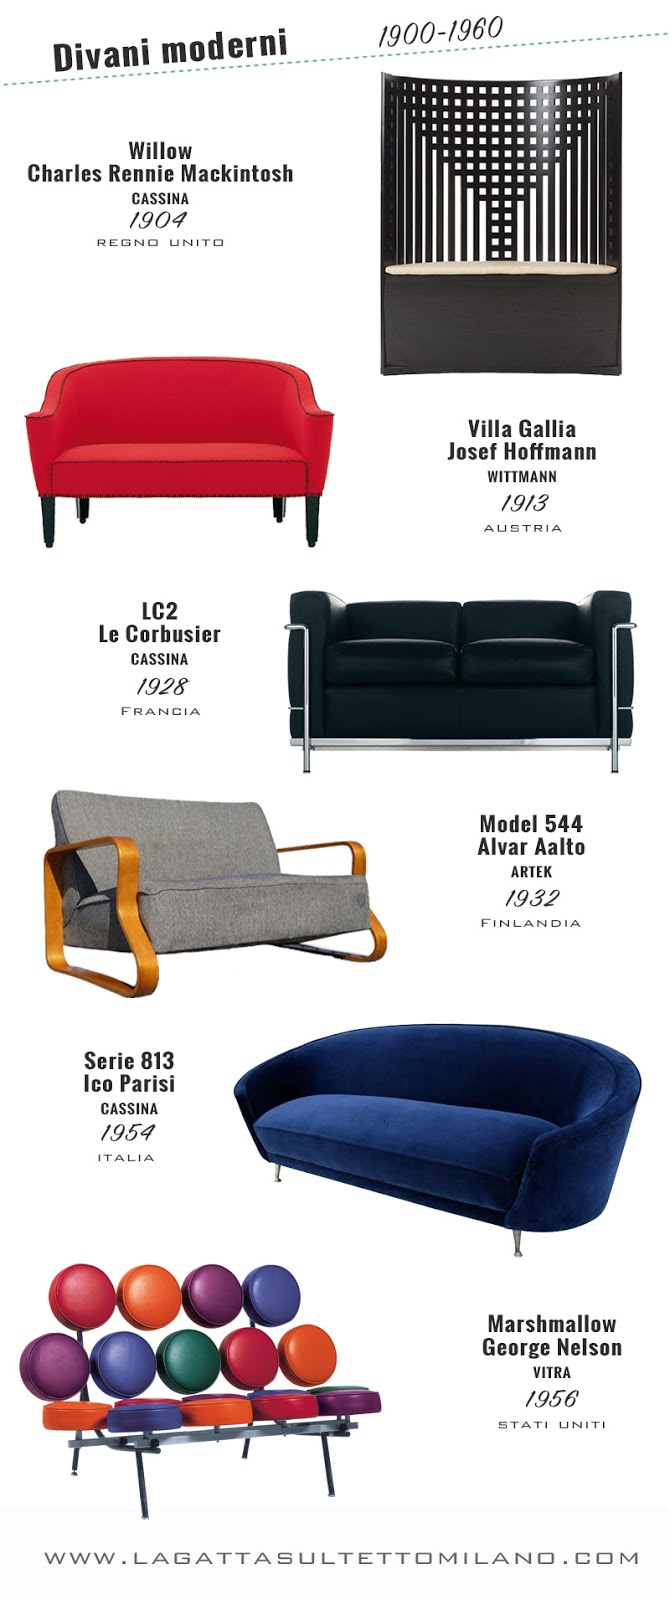 L'evoluzione del divano da Versailles ai nostri giorni infografica divani moderni